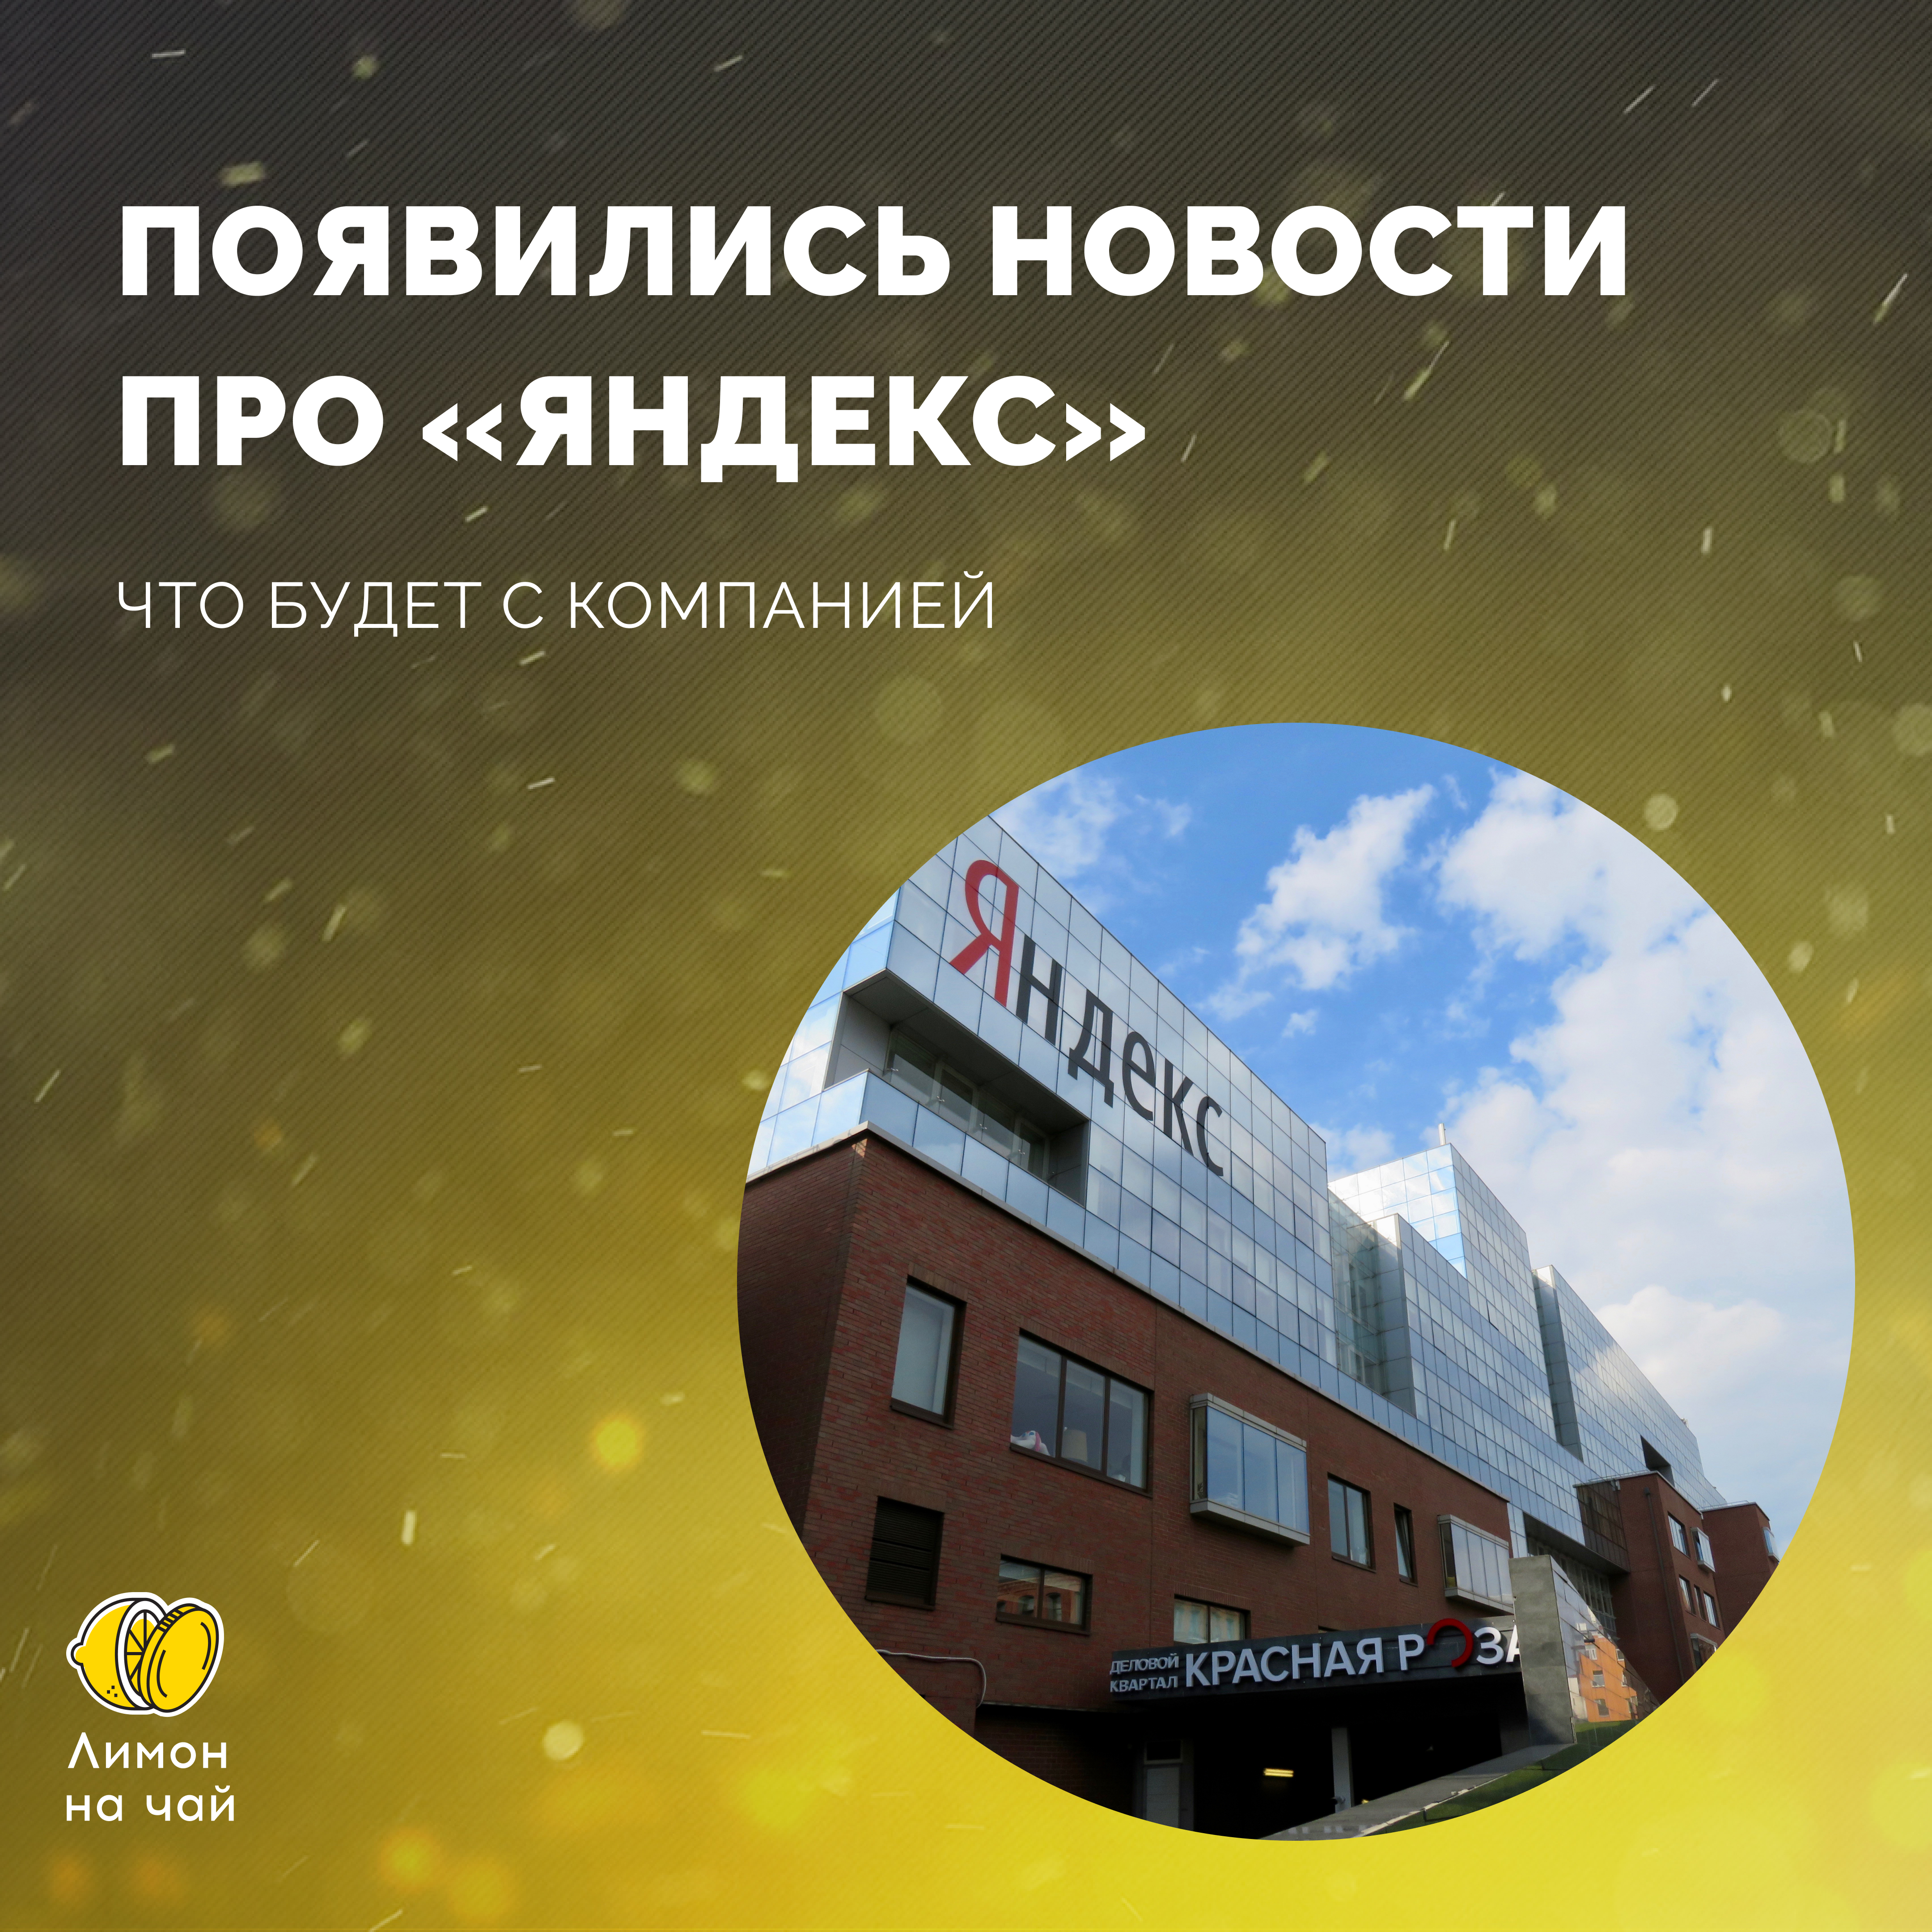 «Яндекс» переехал. Или всё ещё нет?